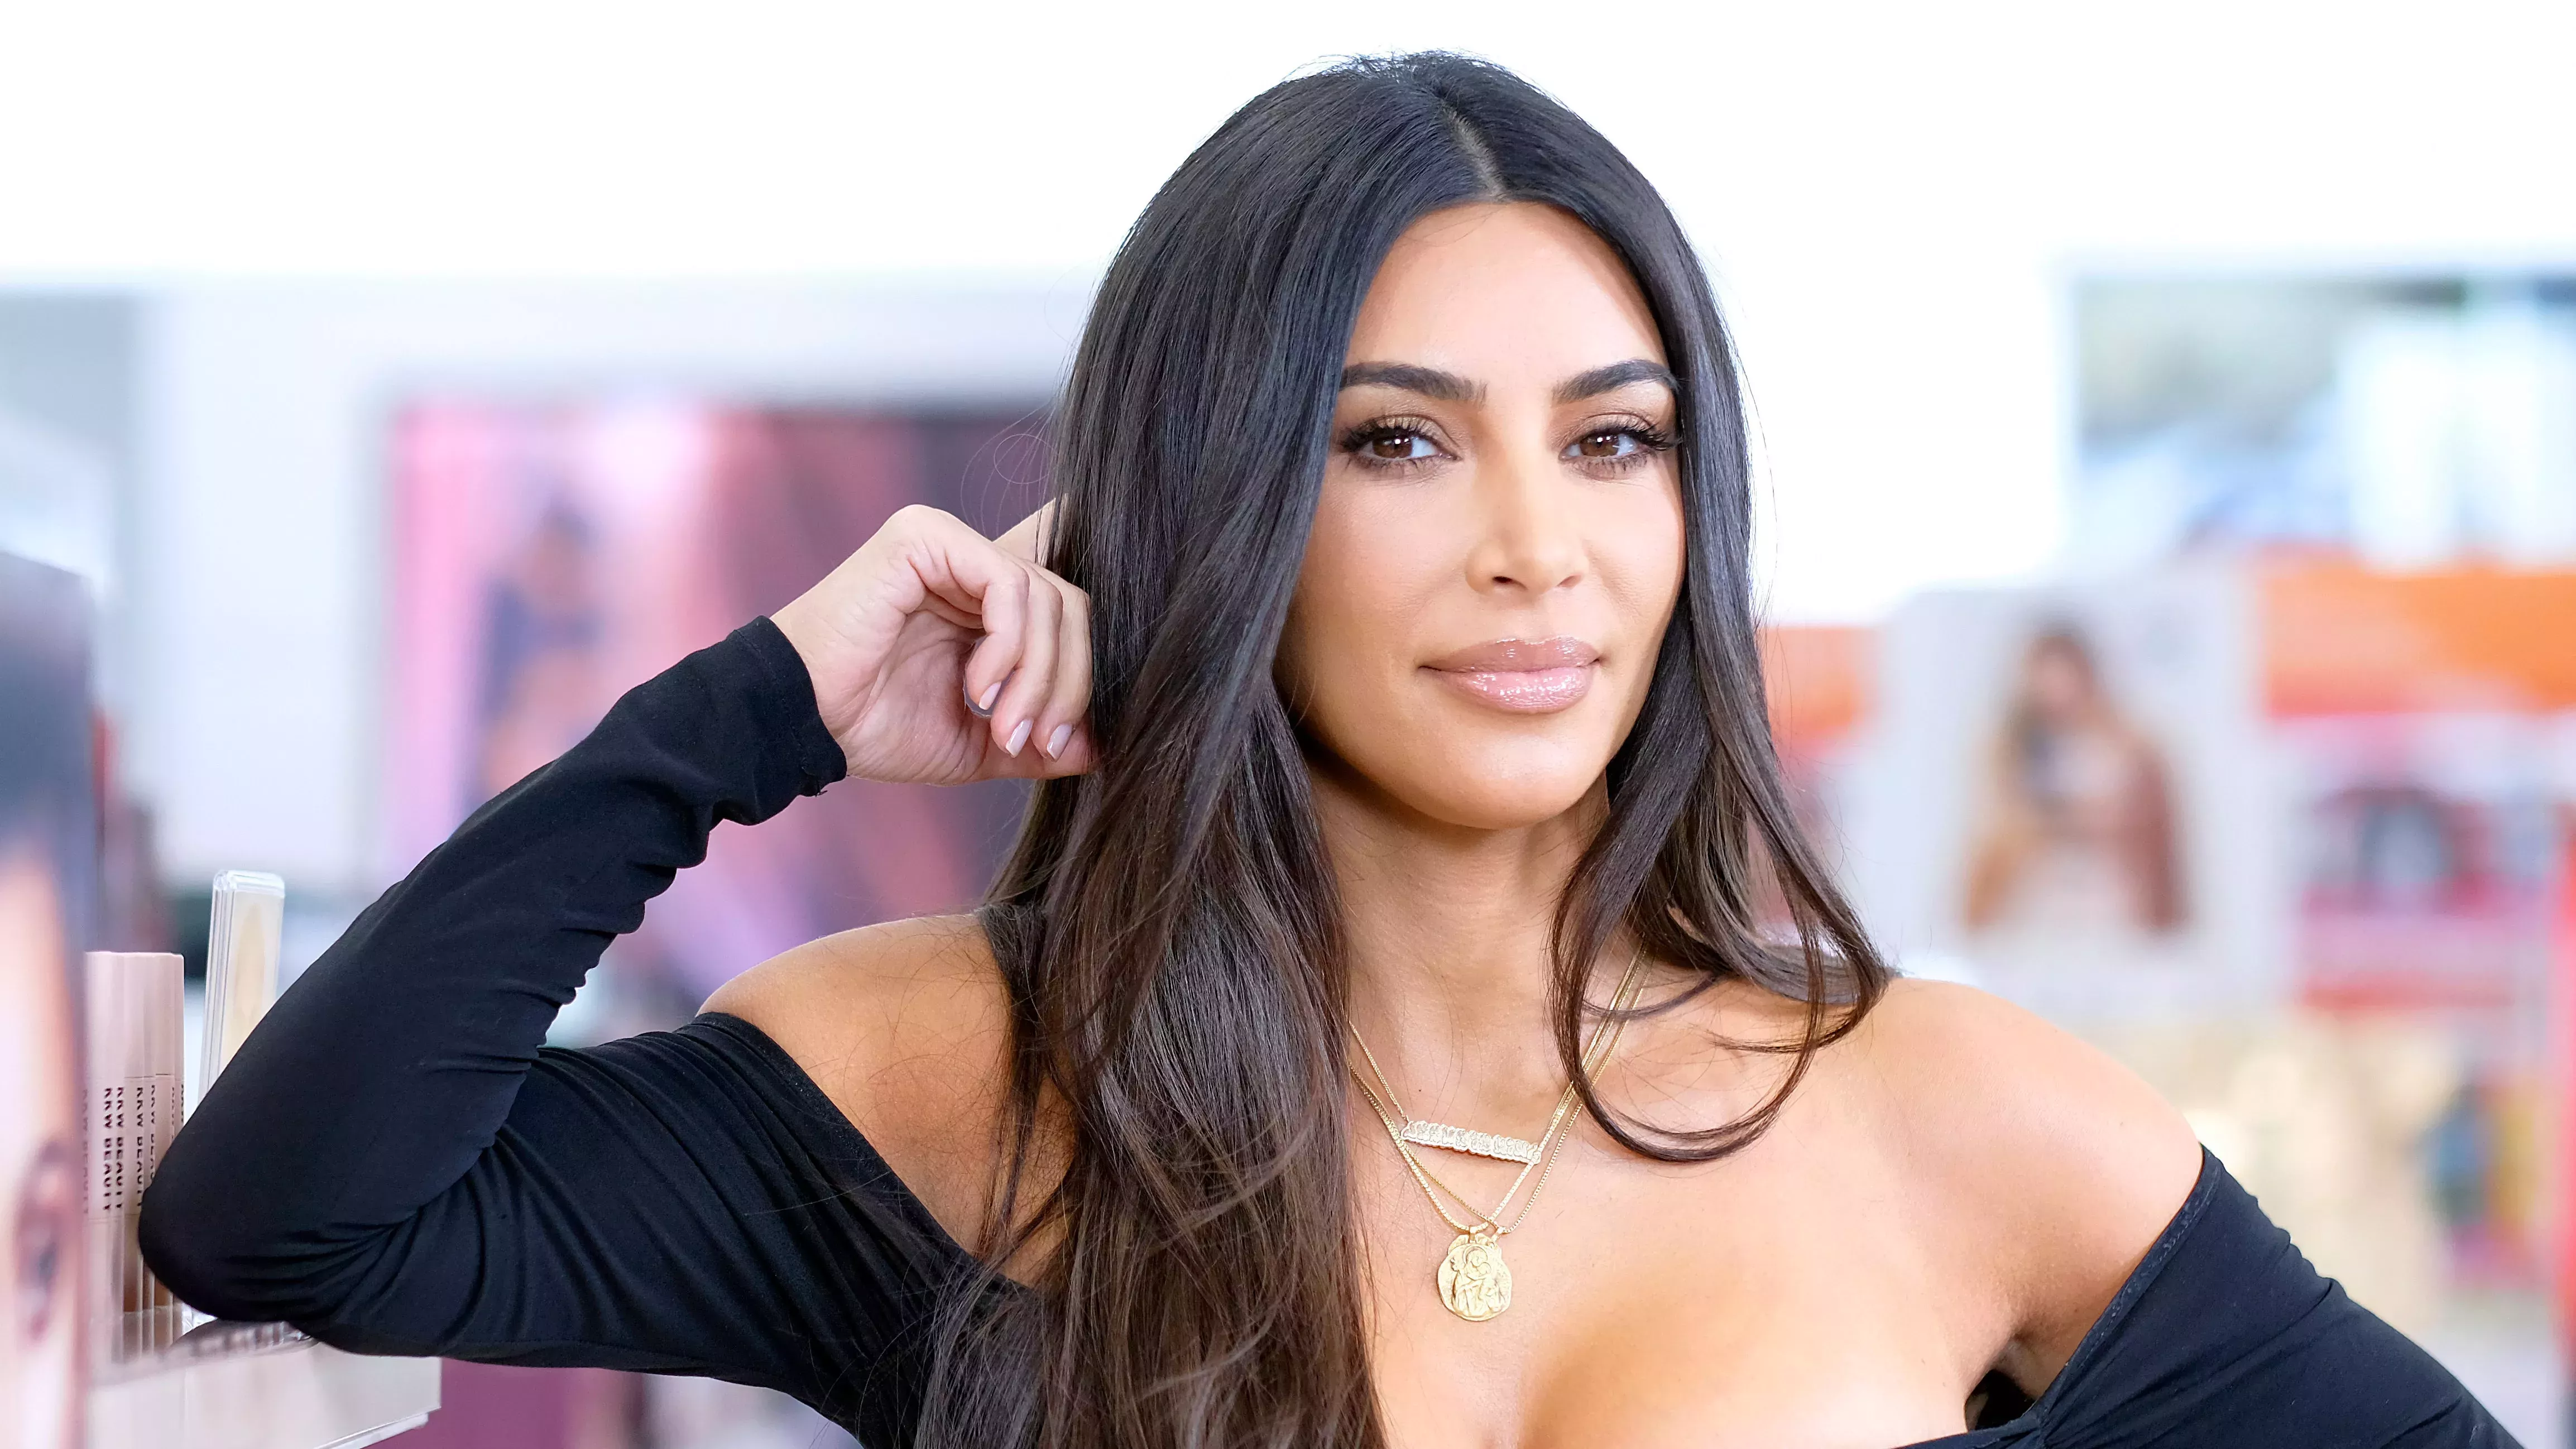 El último selfie "sin maquillaje" de Kim Kardashian desata un debate sobre los filtros